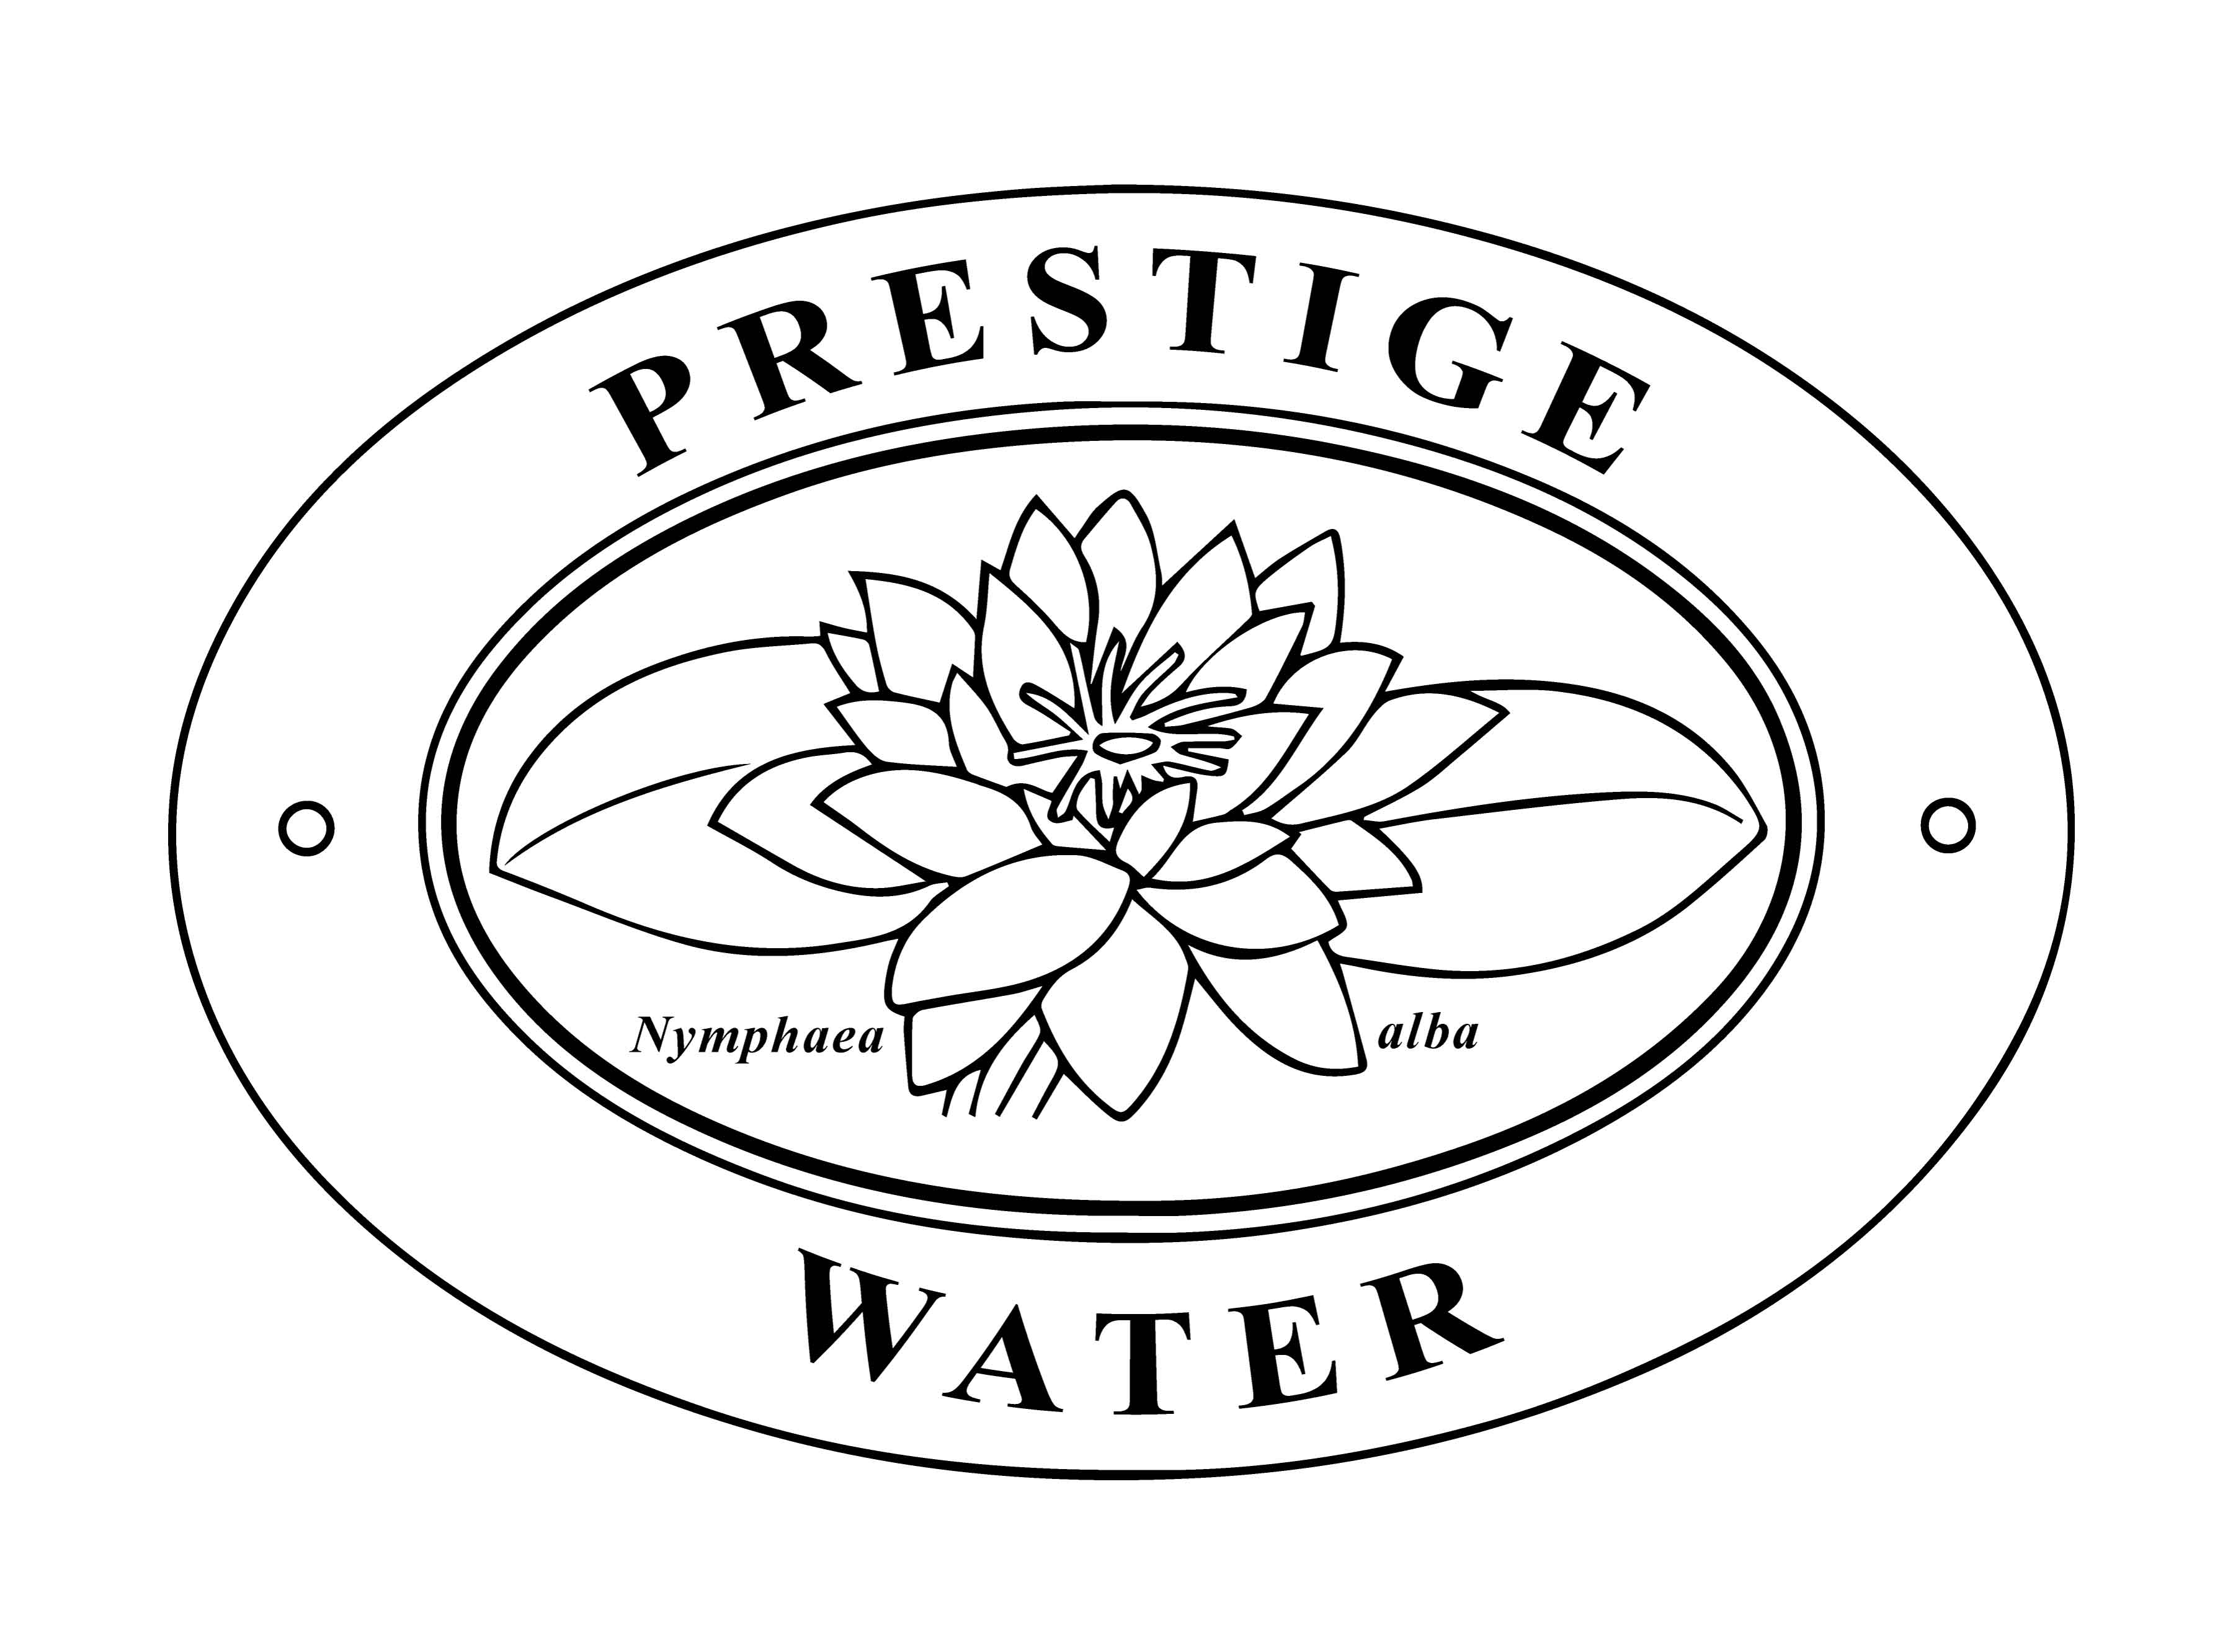 Prestige Water,